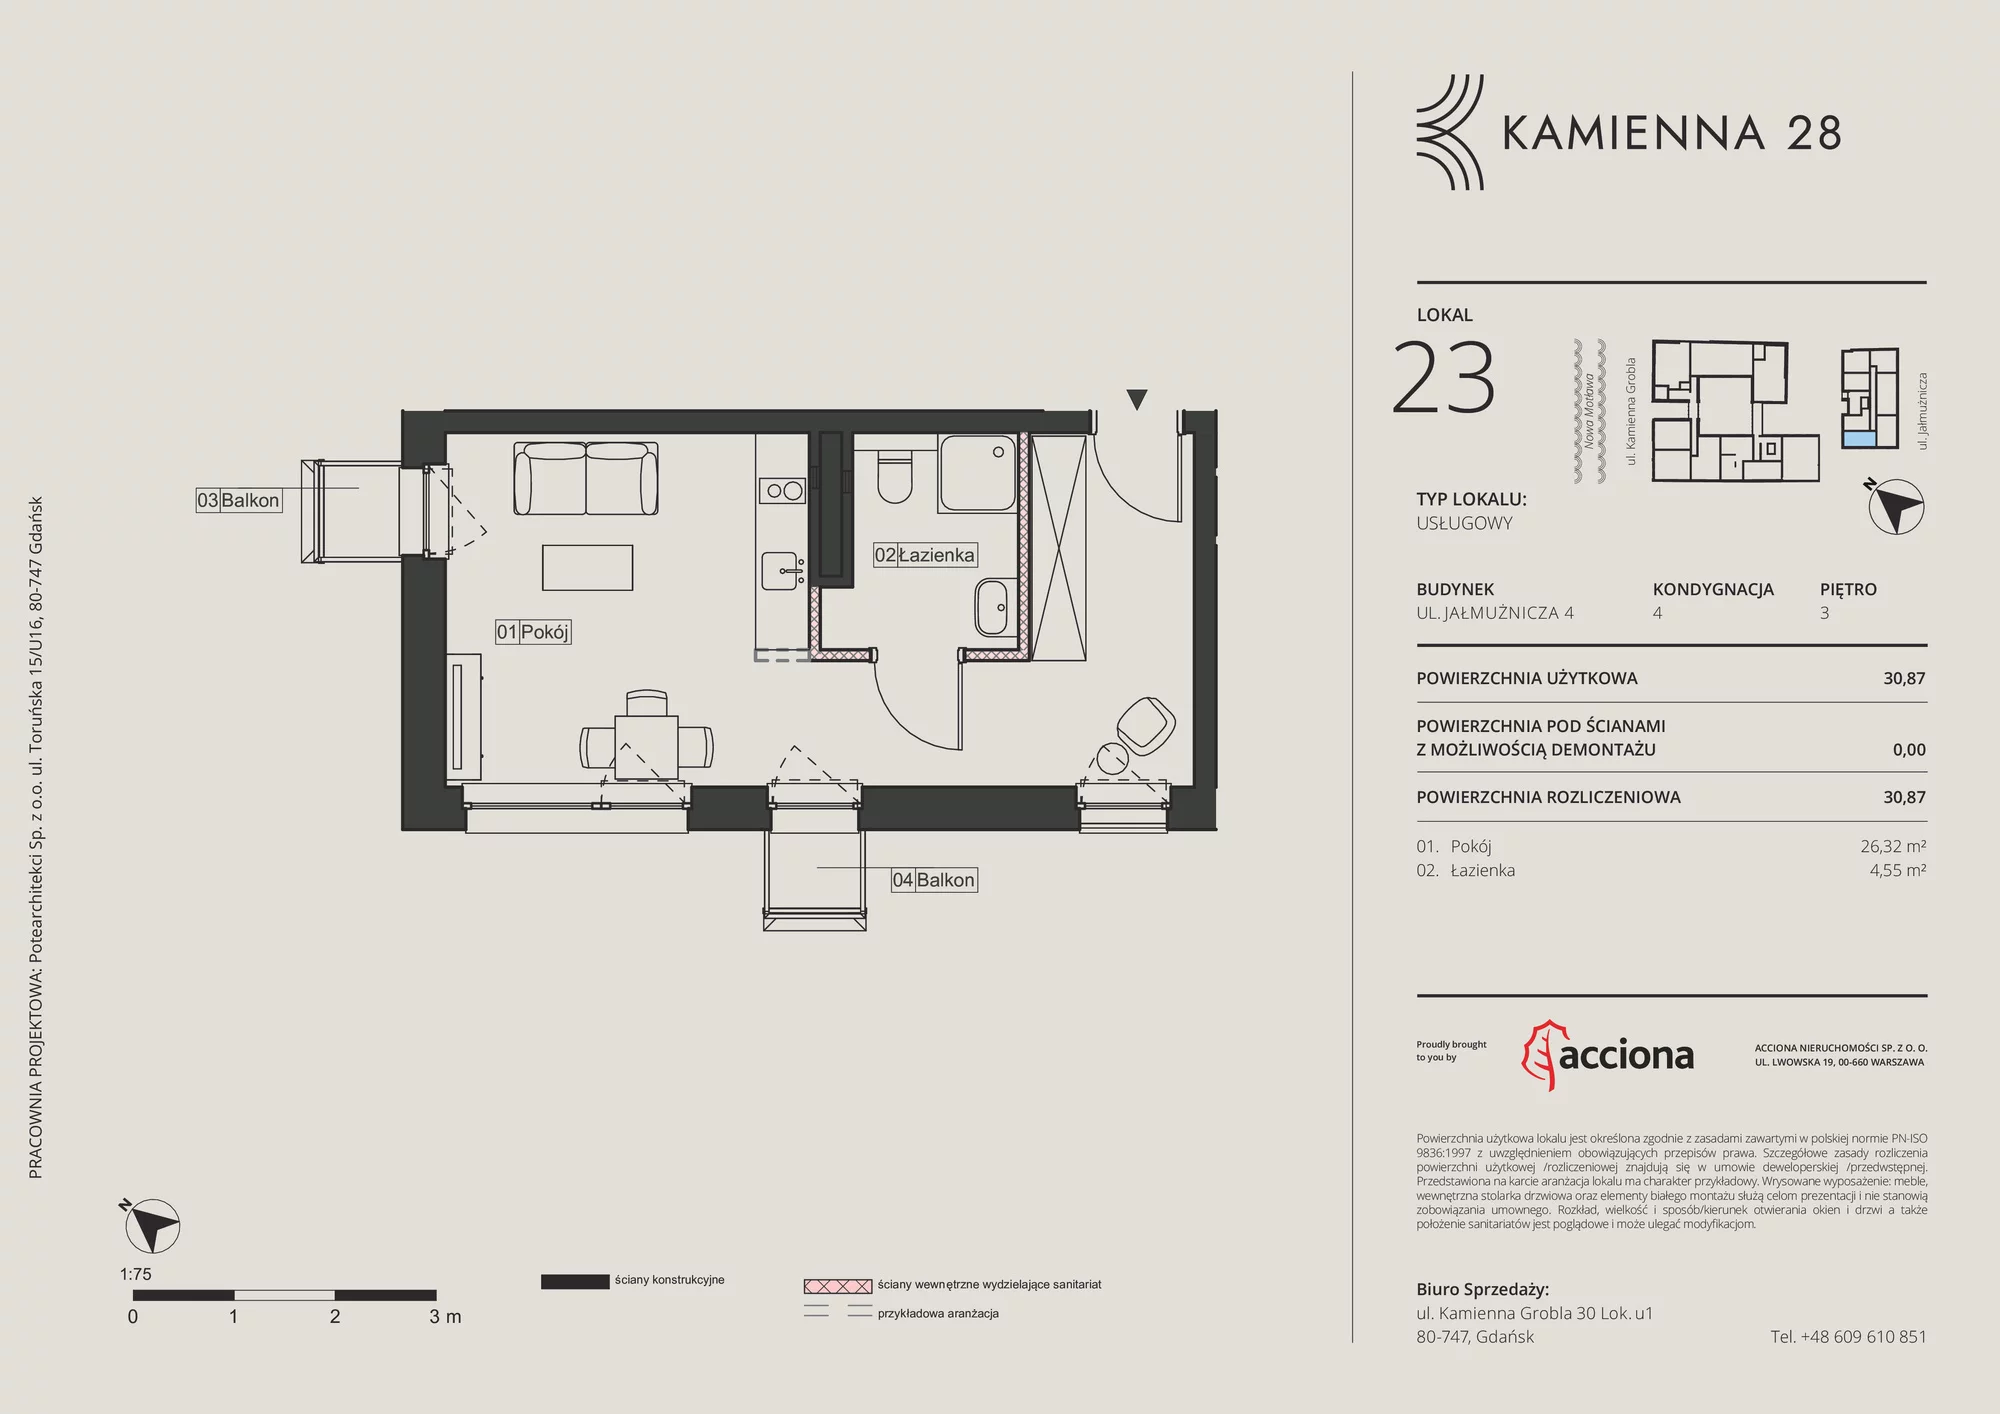 Apartament inwestycyjny 30,87 m², piętro 3, oferta nr 4.23, Kamienna 28 - apartamenty inwestycyjne, Gdańsk, Śródmieście, Dolne Miasto, ul. Jałmużnicza 4